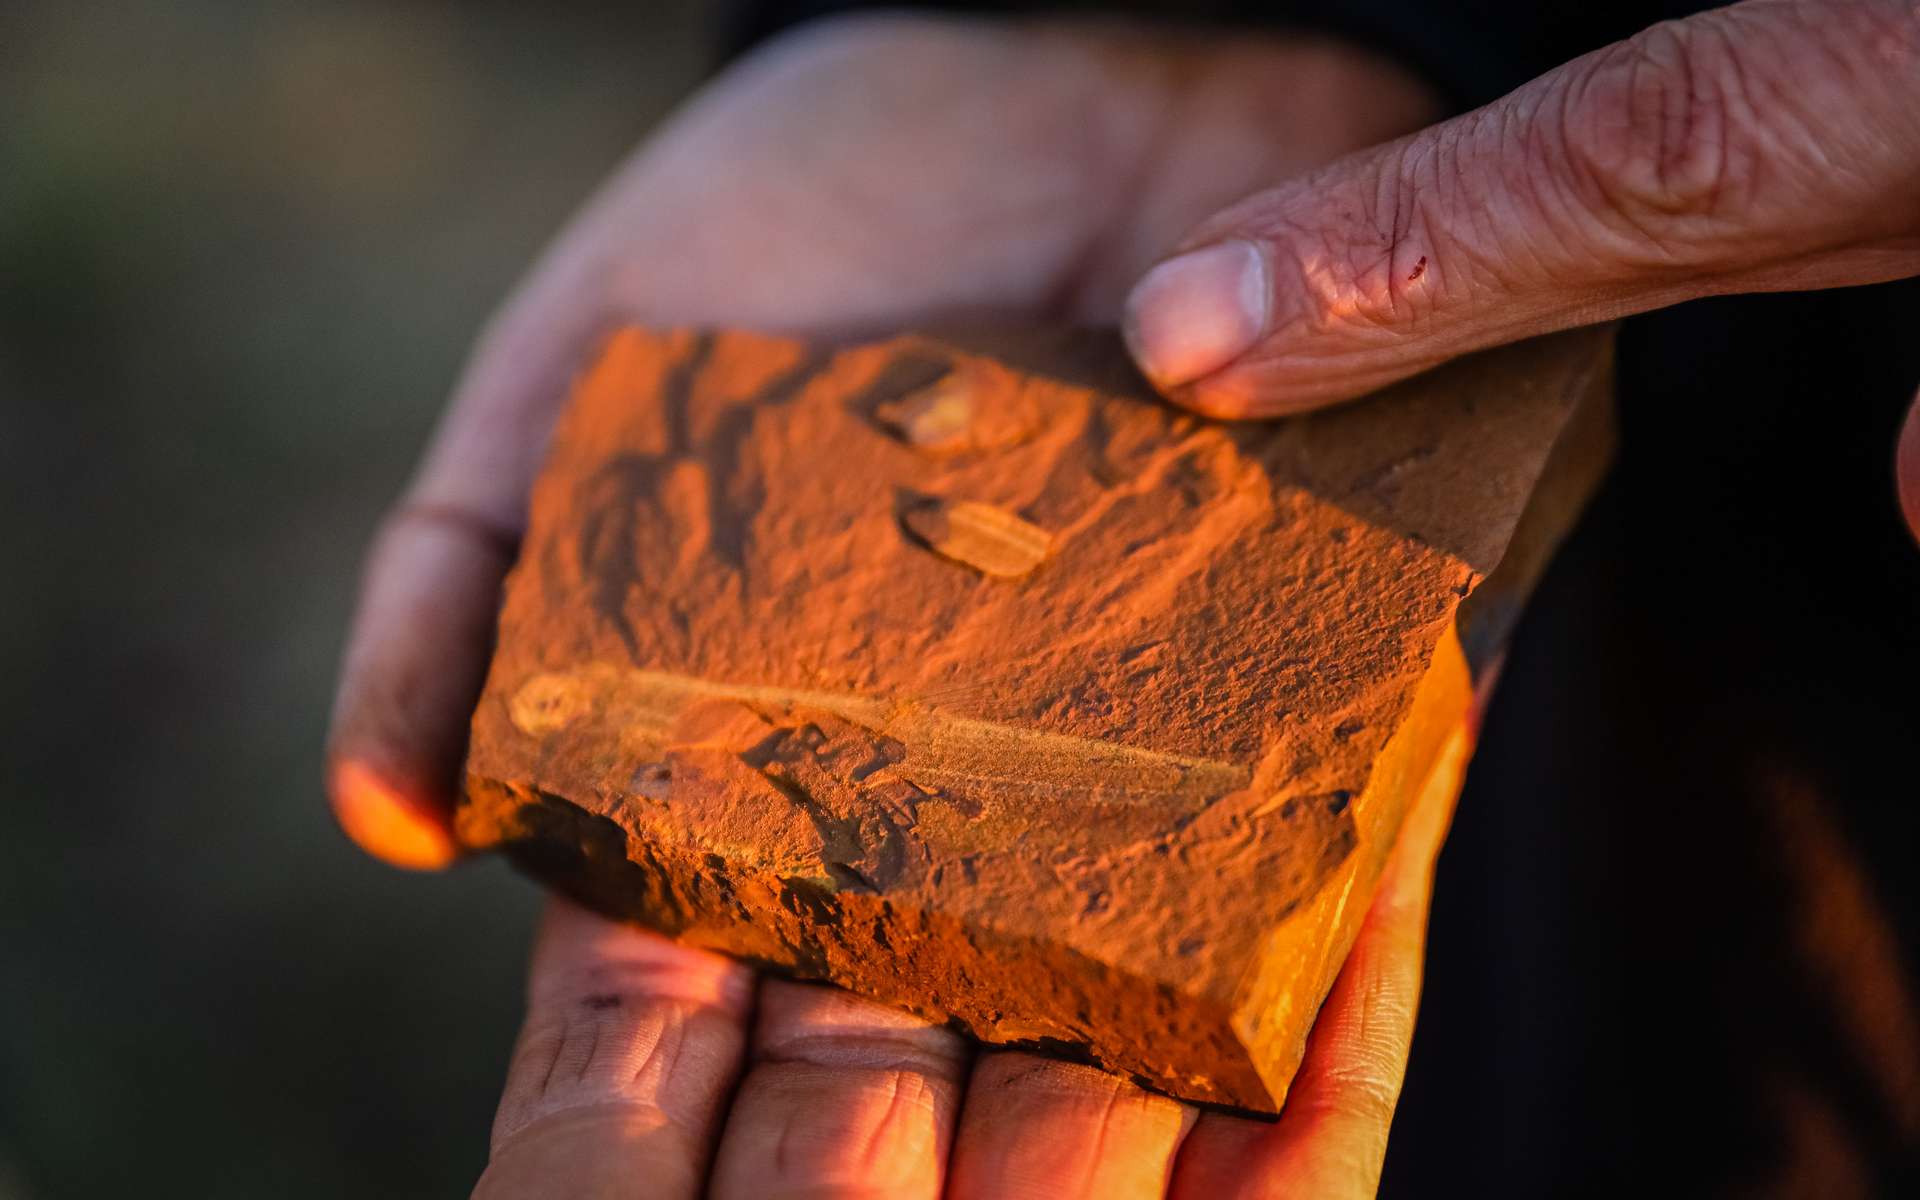 Des fossiles d'insectes datant du Miocène ont été trouvés près de la ville de Gulgong, en Australie. © Salty Dingo 2020 038A7561